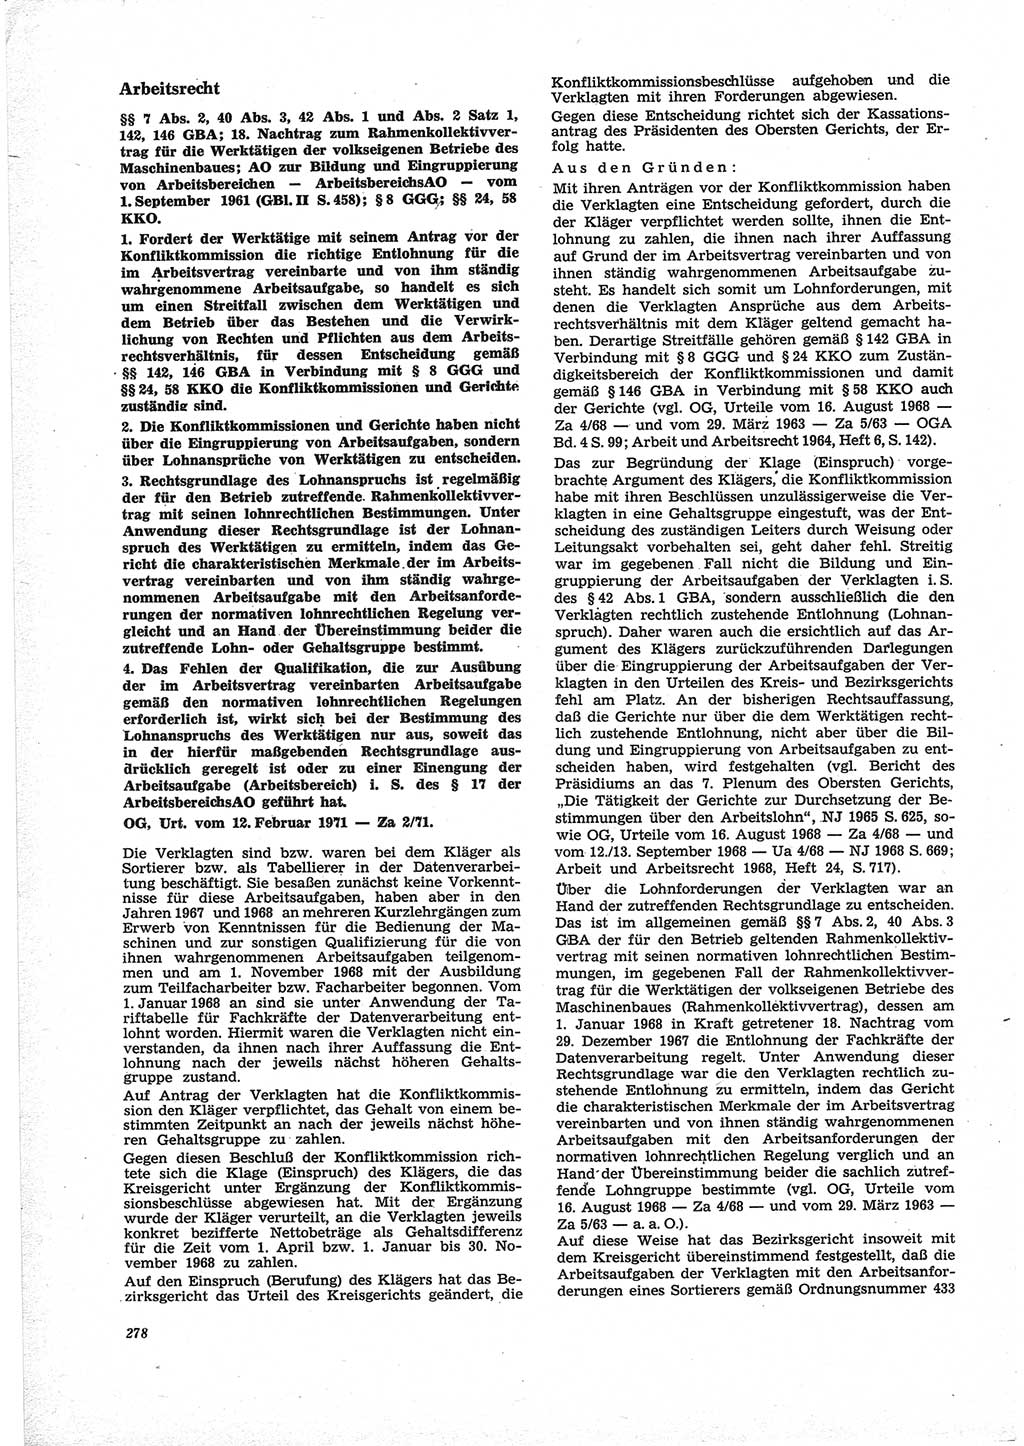 Neue Justiz (NJ), Zeitschrift für Recht und Rechtswissenschaft [Deutsche Demokratische Republik (DDR)], 25. Jahrgang 1971, Seite 278 (NJ DDR 1971, S. 278)